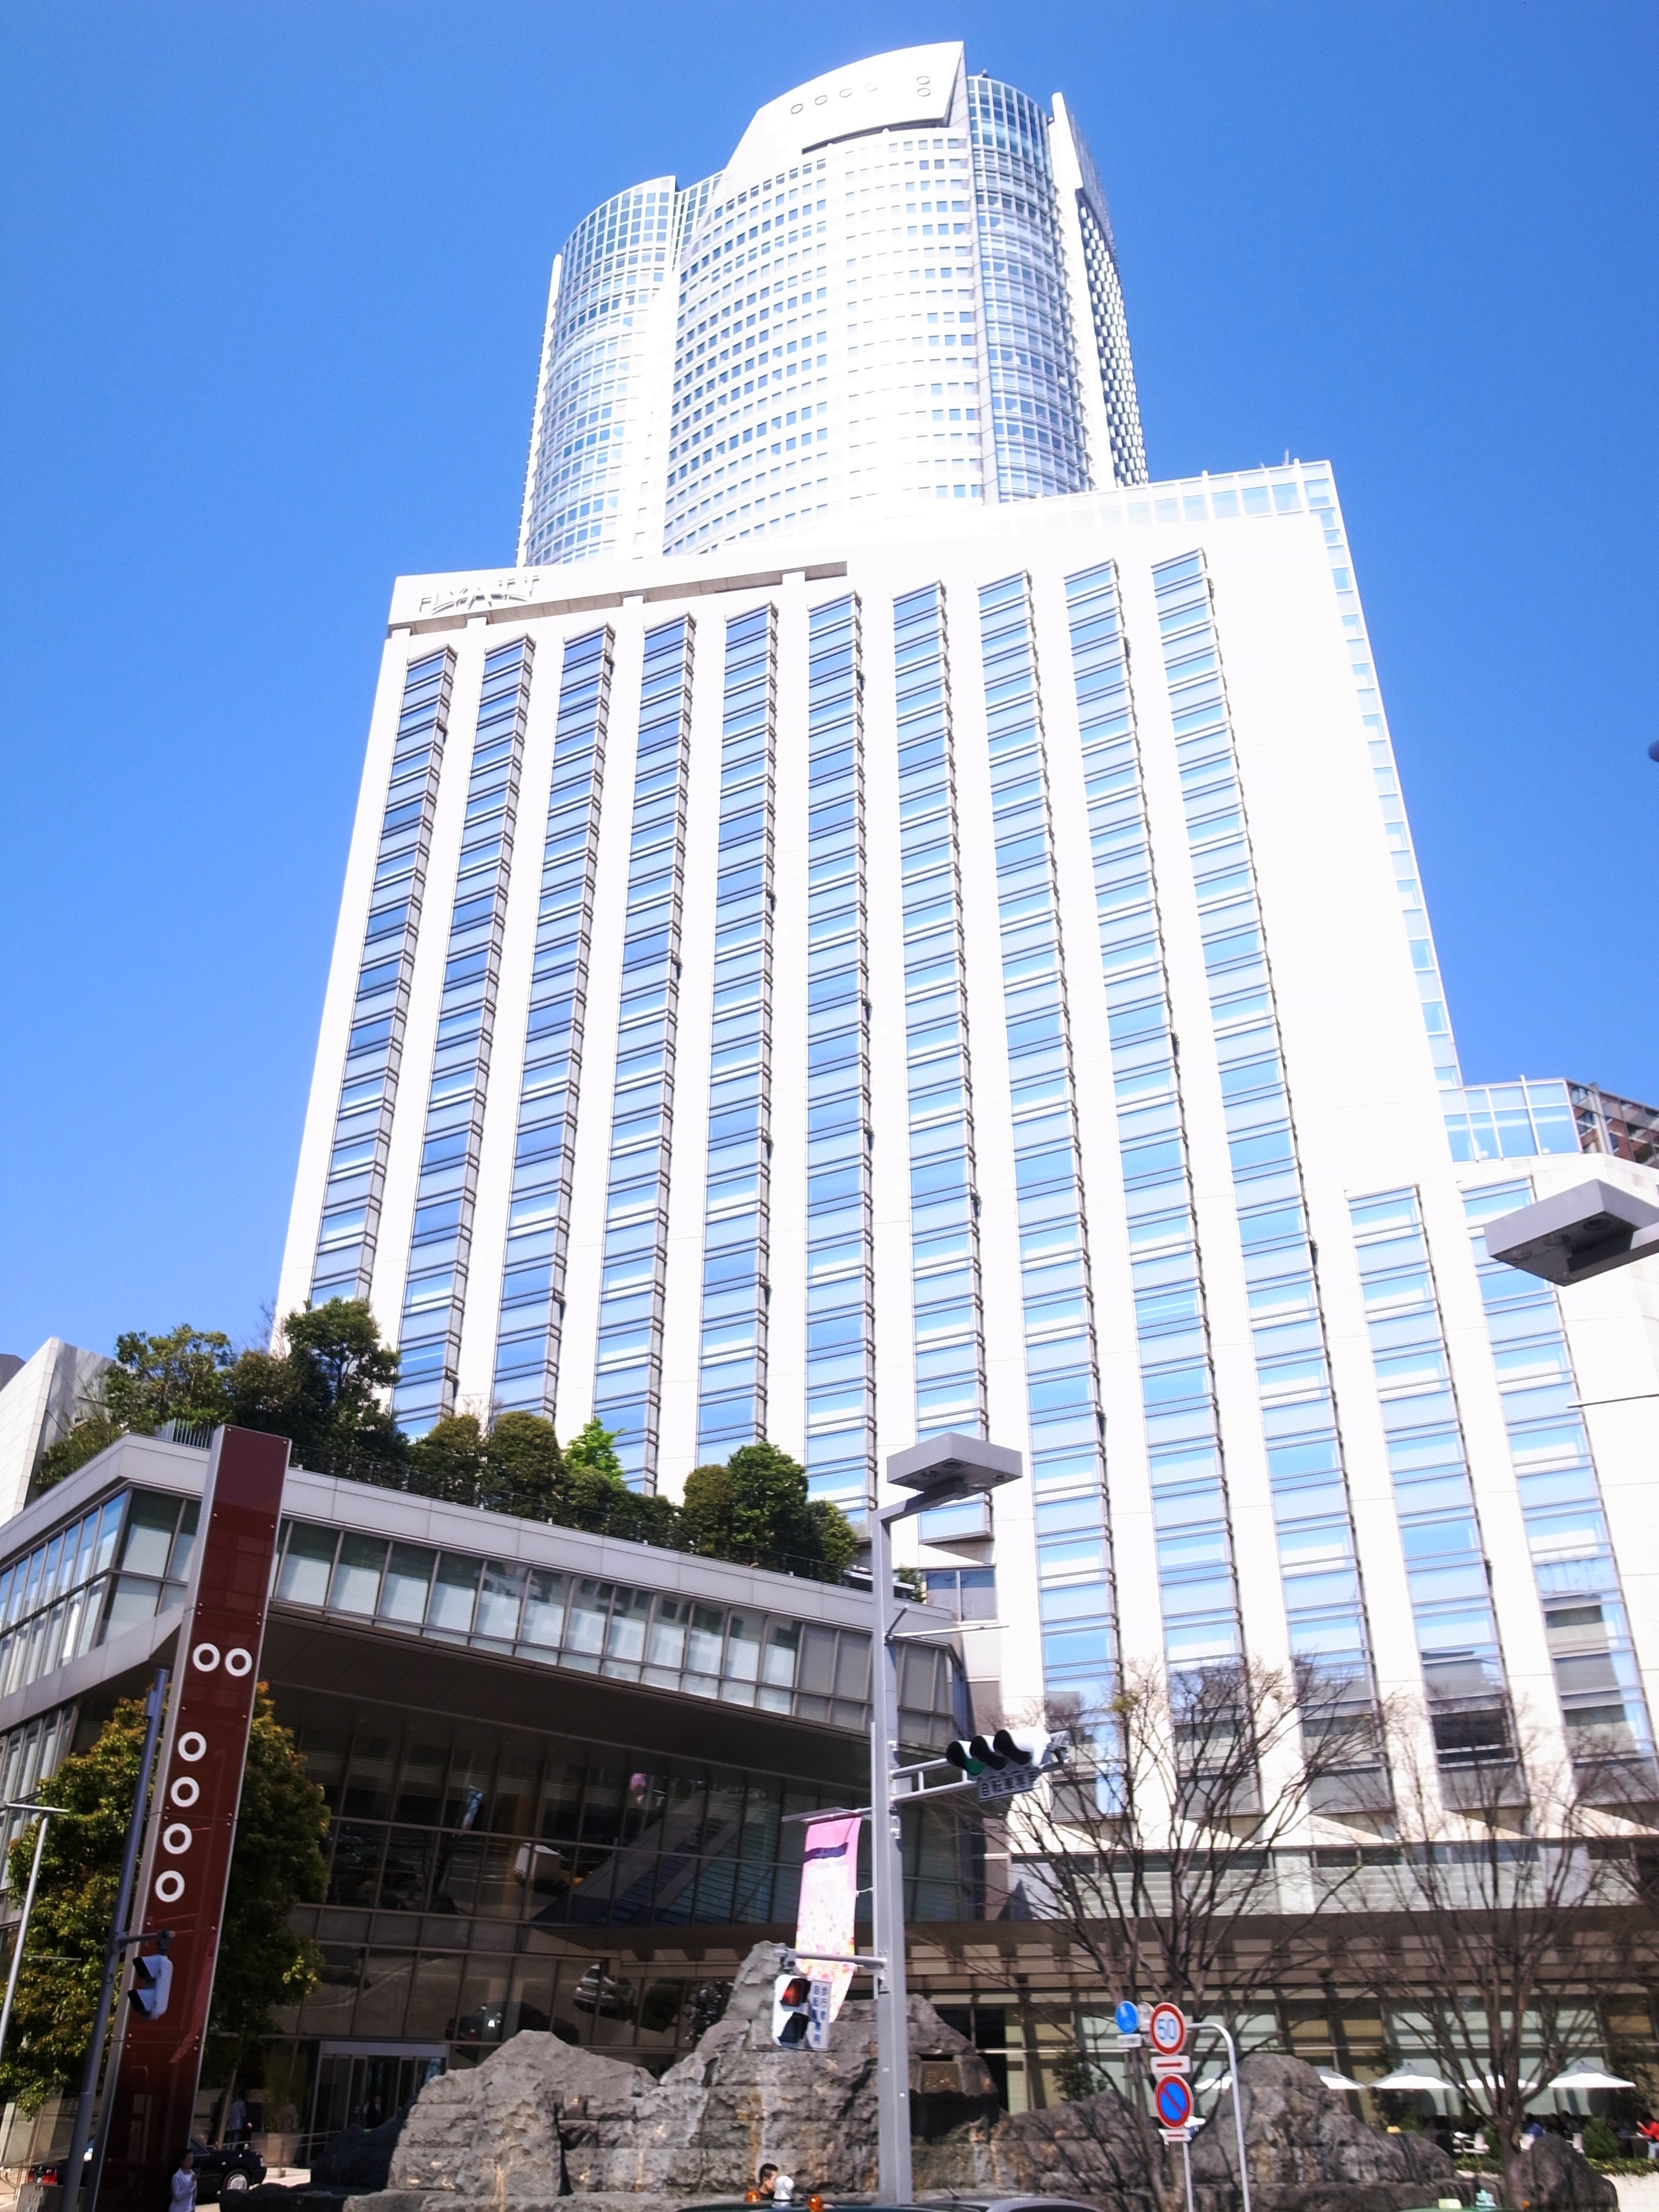 グランドハイアット東京 - Wikipedia